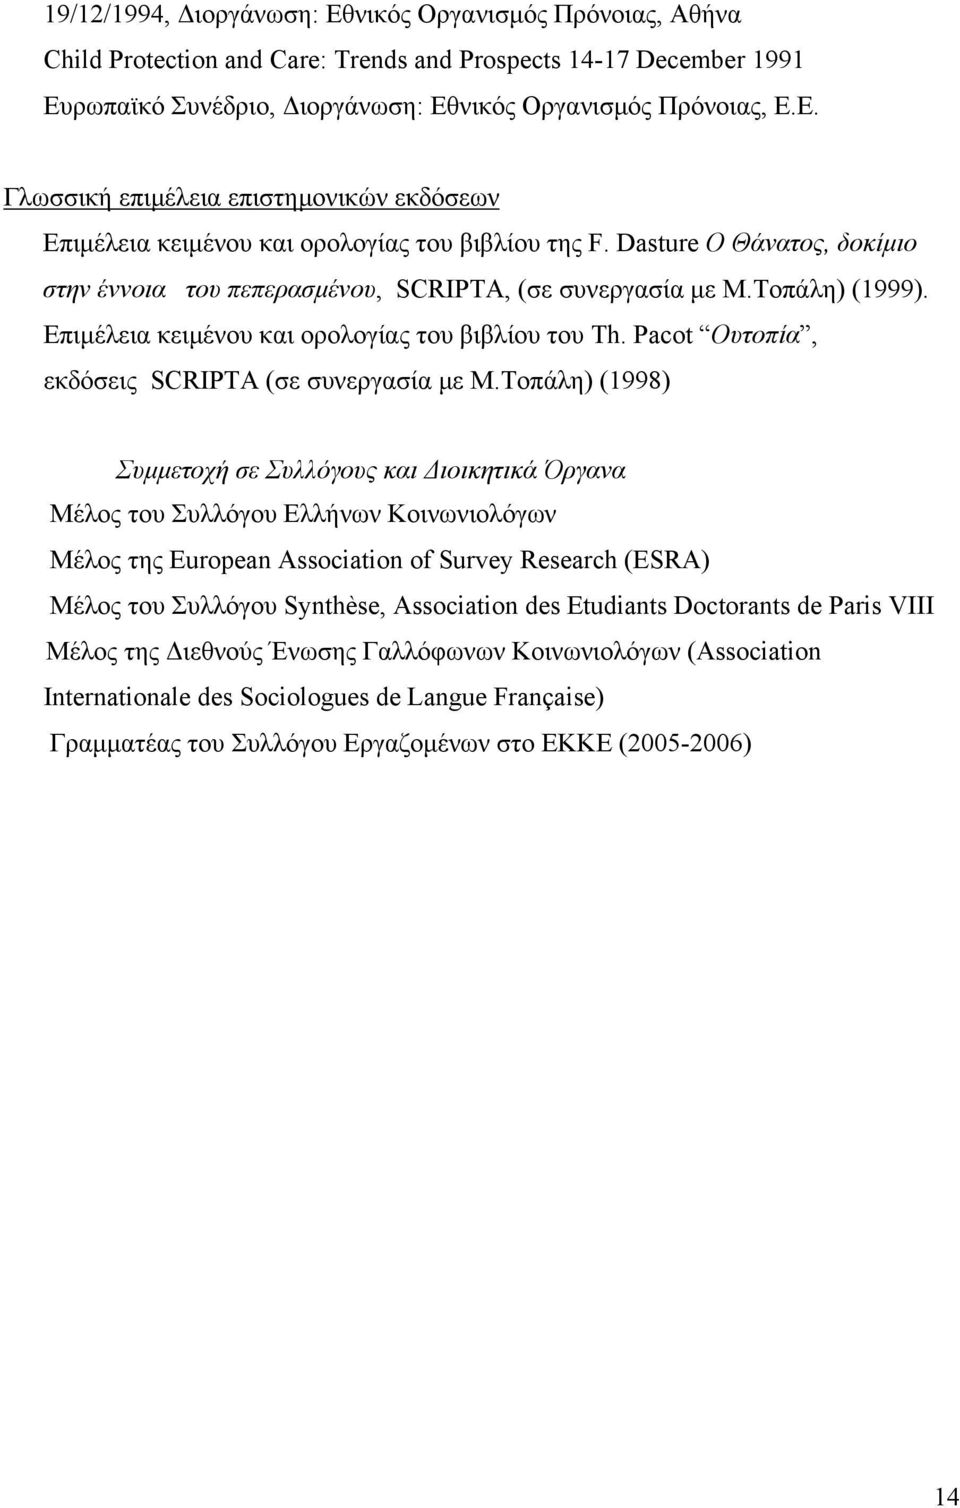 Pacot Ουτοπία, εκδόσεις SCRIPTΑ (σε συνεργασία με Μ.